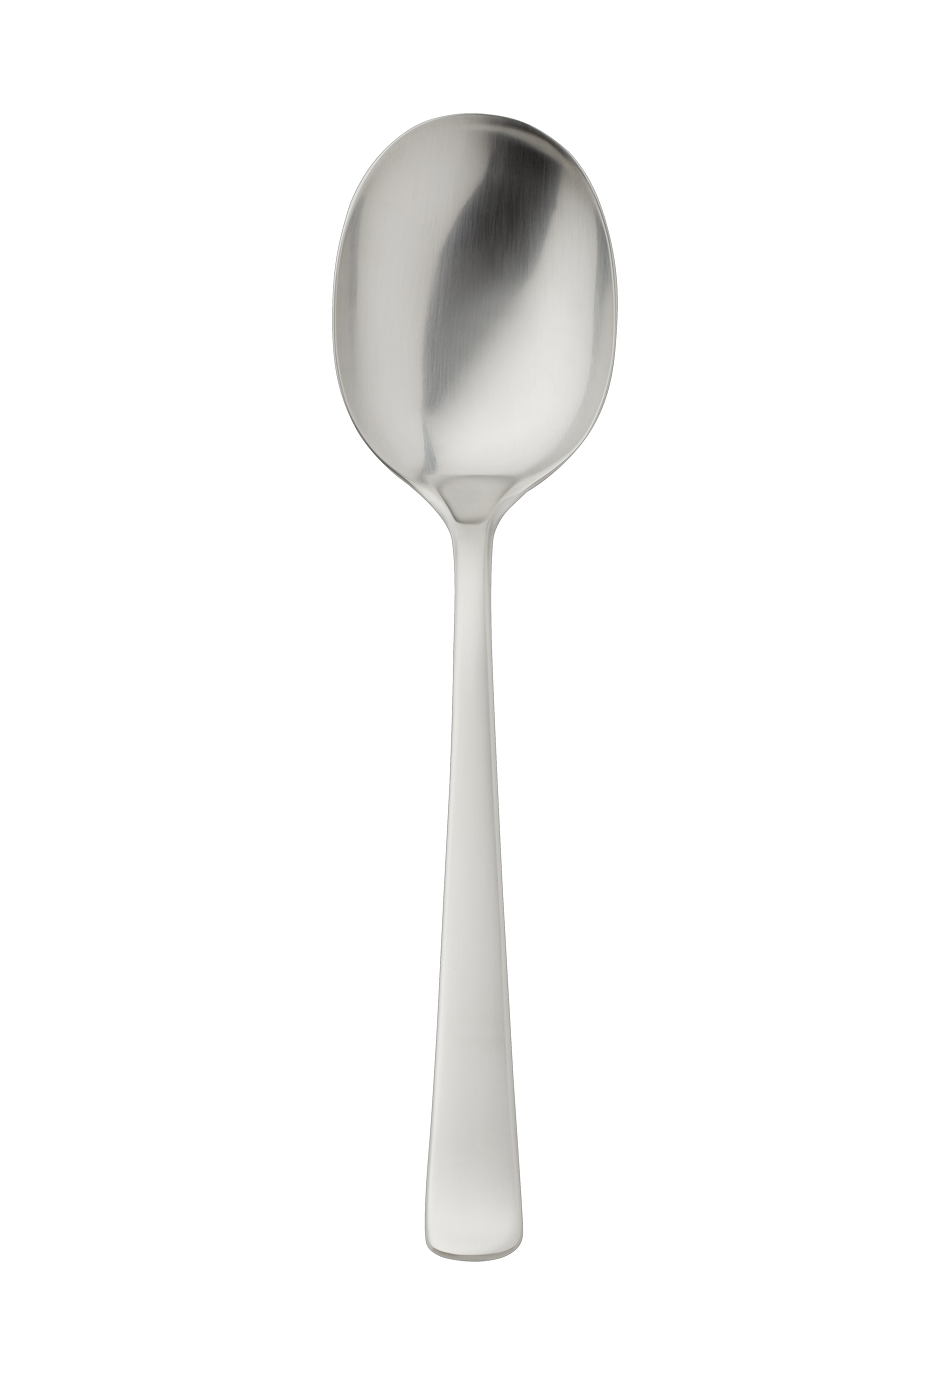 Atlantic Serving Spoon (18/8 stainless steel)